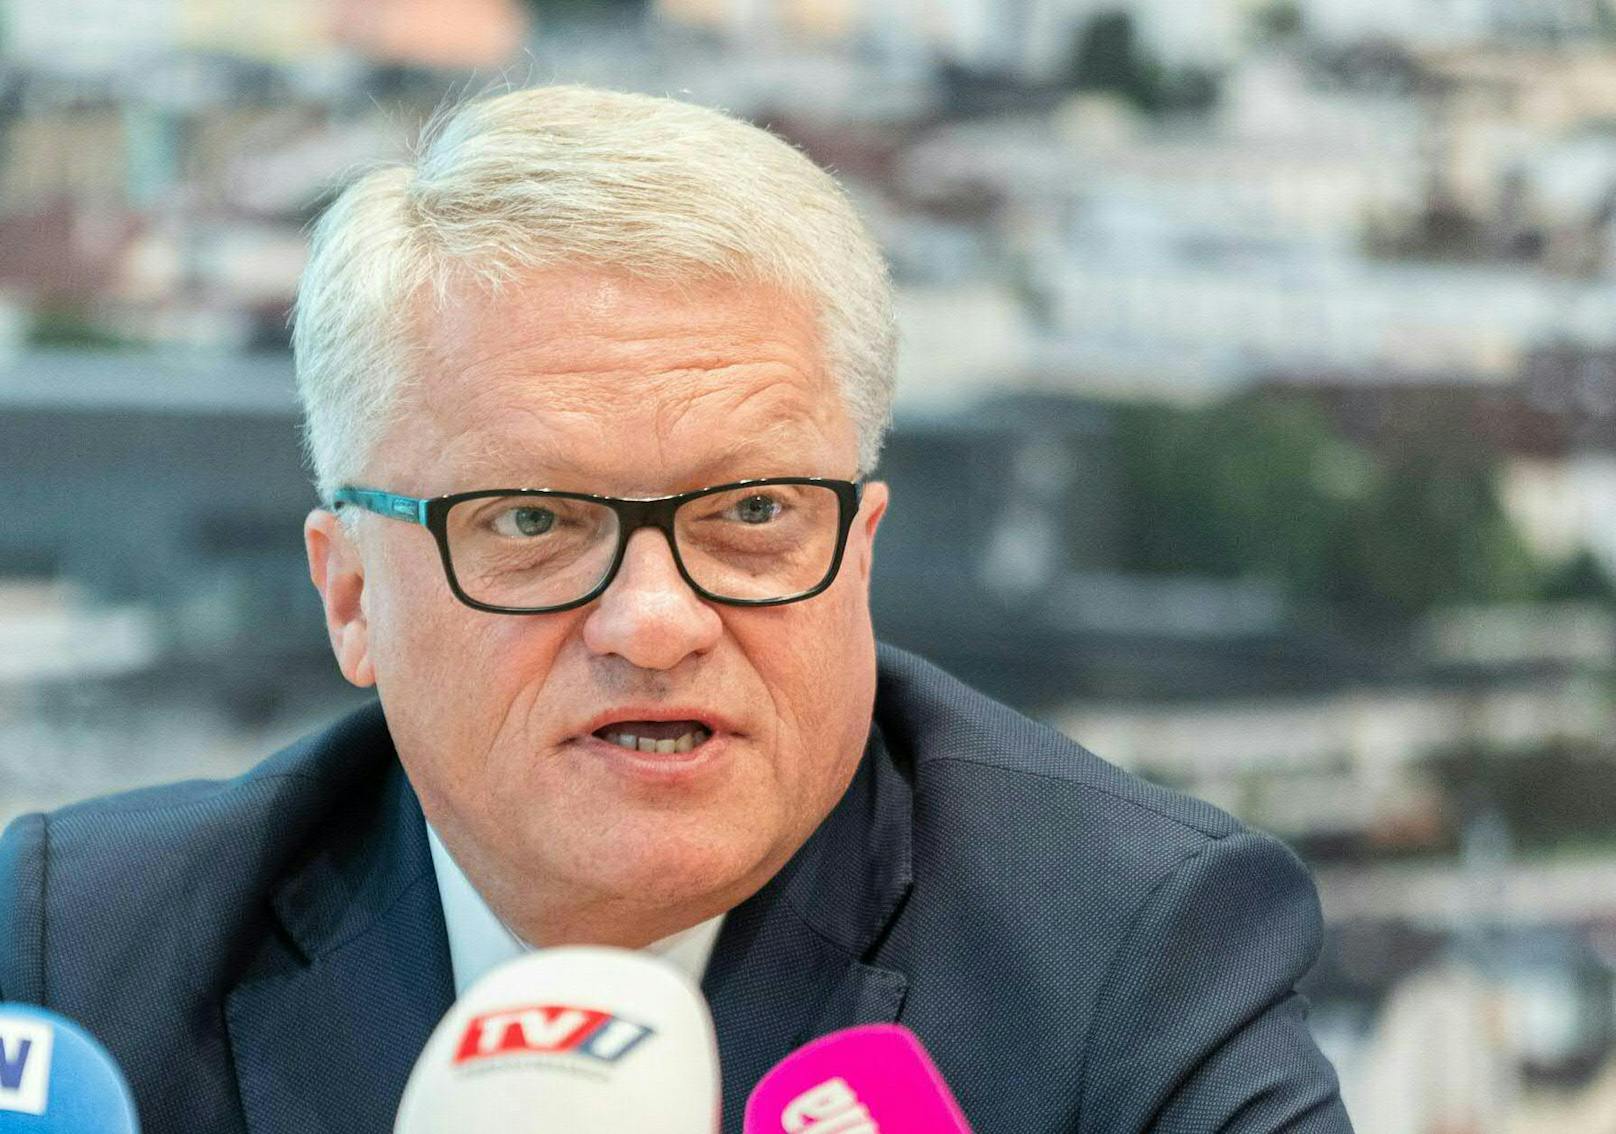 Schon seit Einführung der Corona-Ampel kein Freund von ihr: Linz-Bürgermeister Klaus Luger (SPÖ).